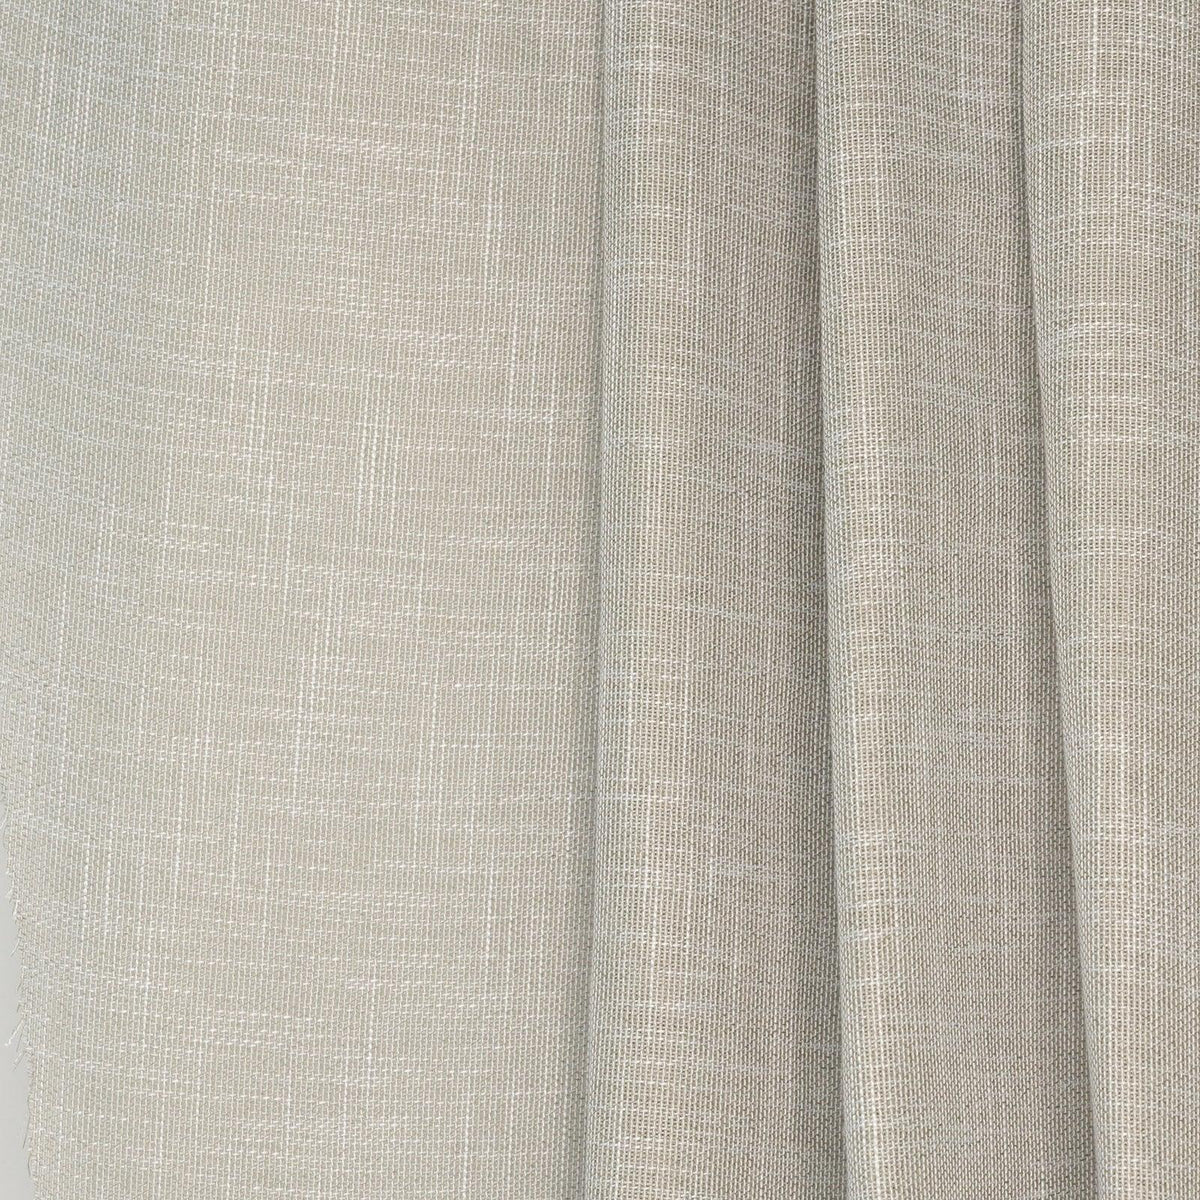 Highlight-Sterling - Atlanta Fabrics